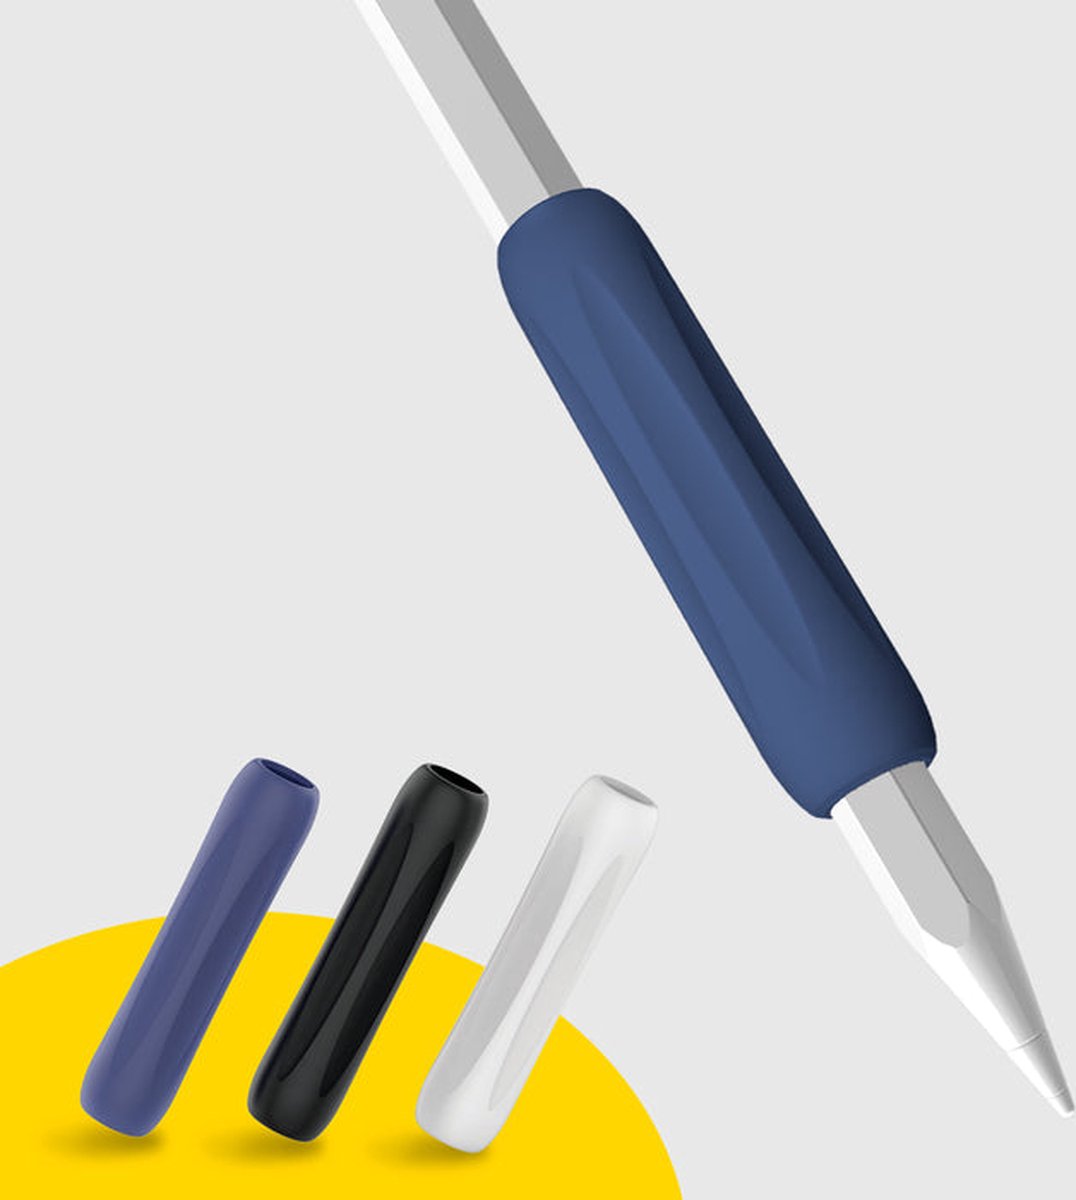 Doodroo Griphouder voor Apple Pencils van de 1e en 2e generatie - 3 Stuks, Wit, Blauw + Zwart